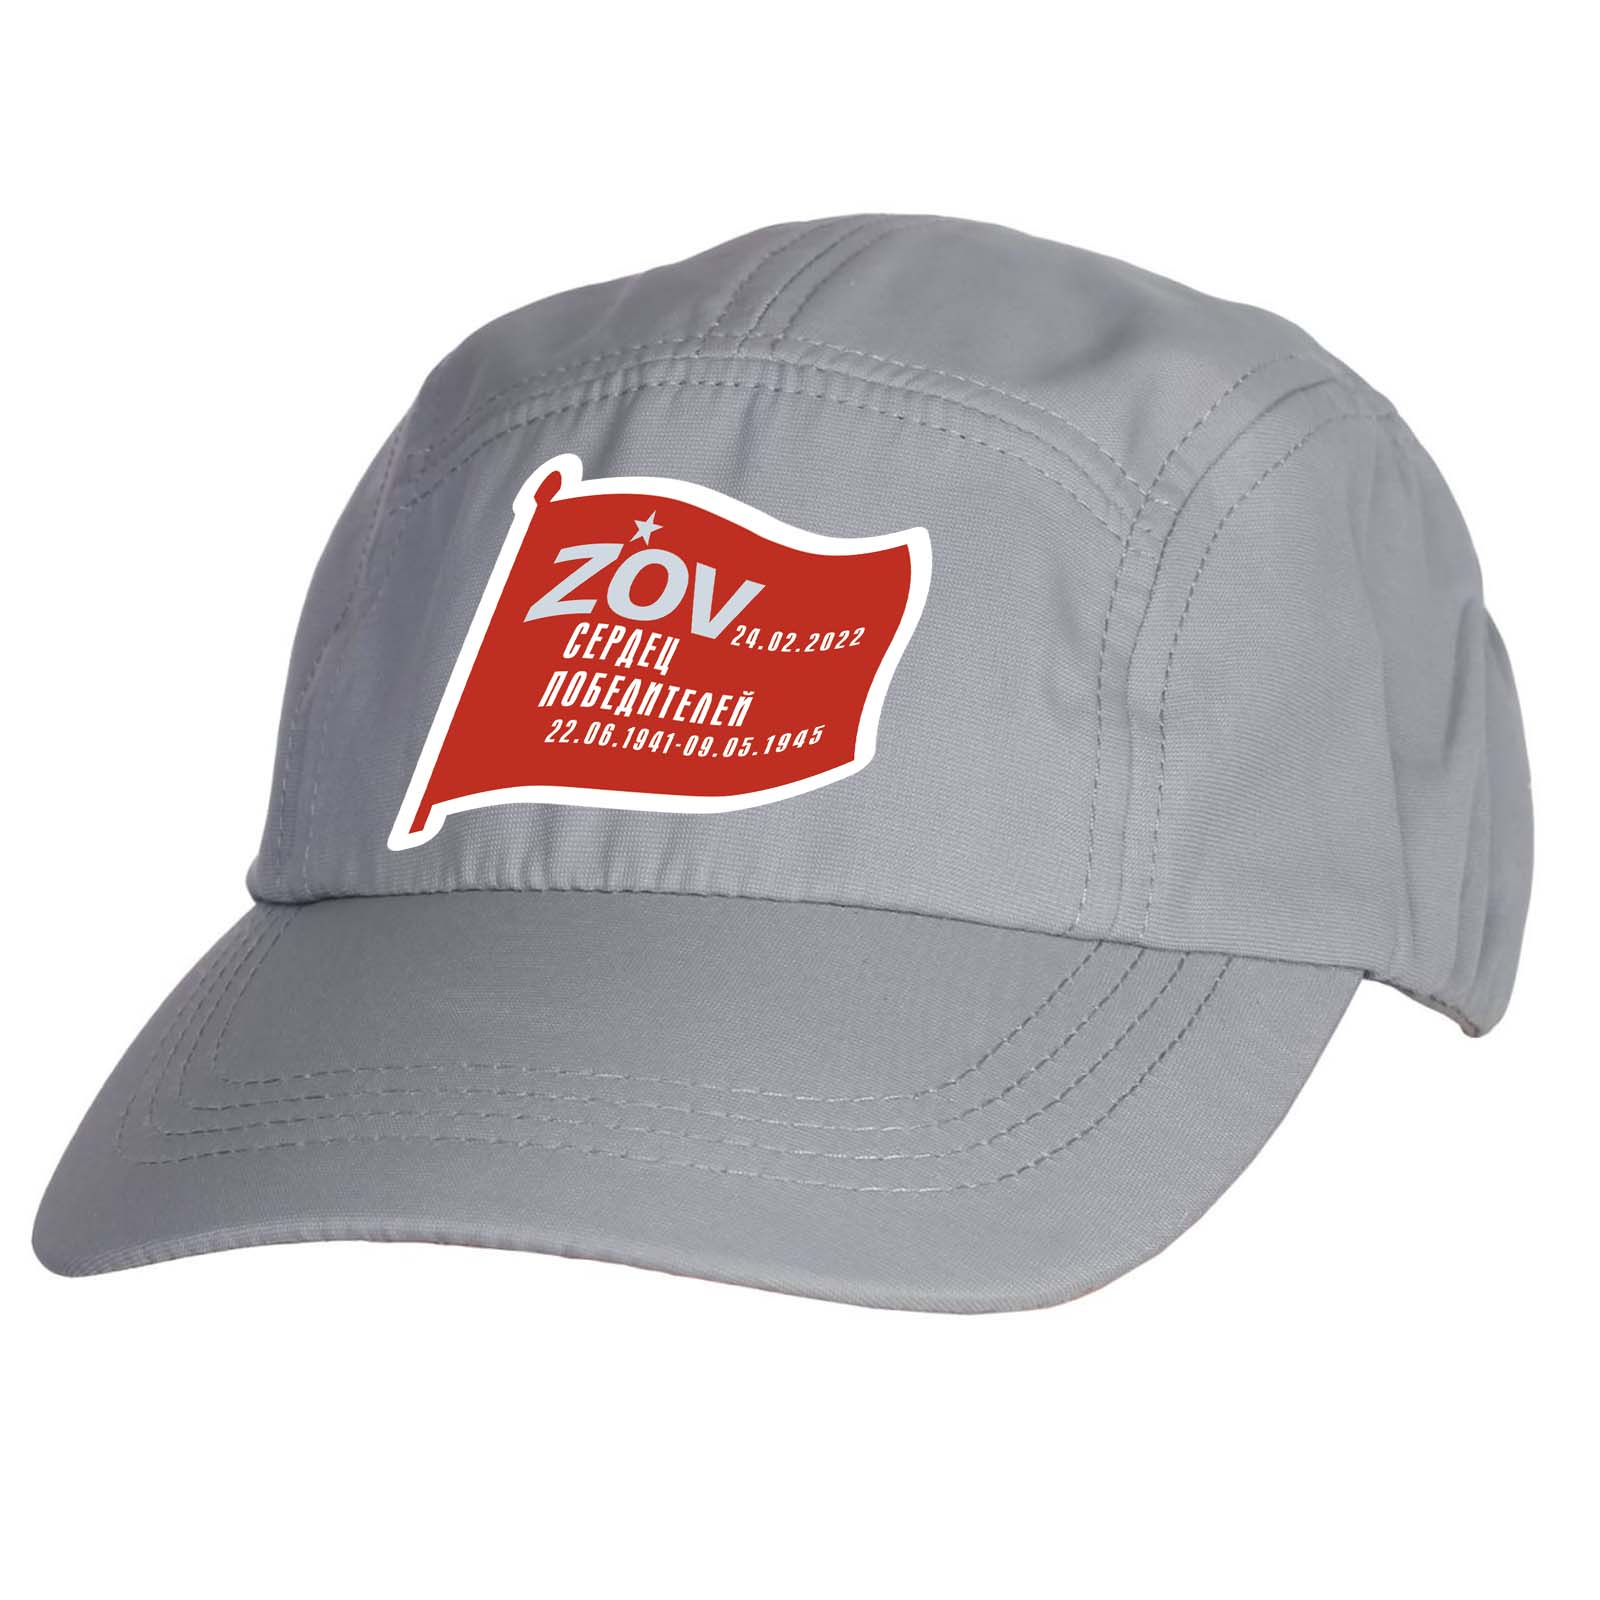 Купить светло-серую стильную кепку-пятипанельку ZOV сердец победителей онлайн